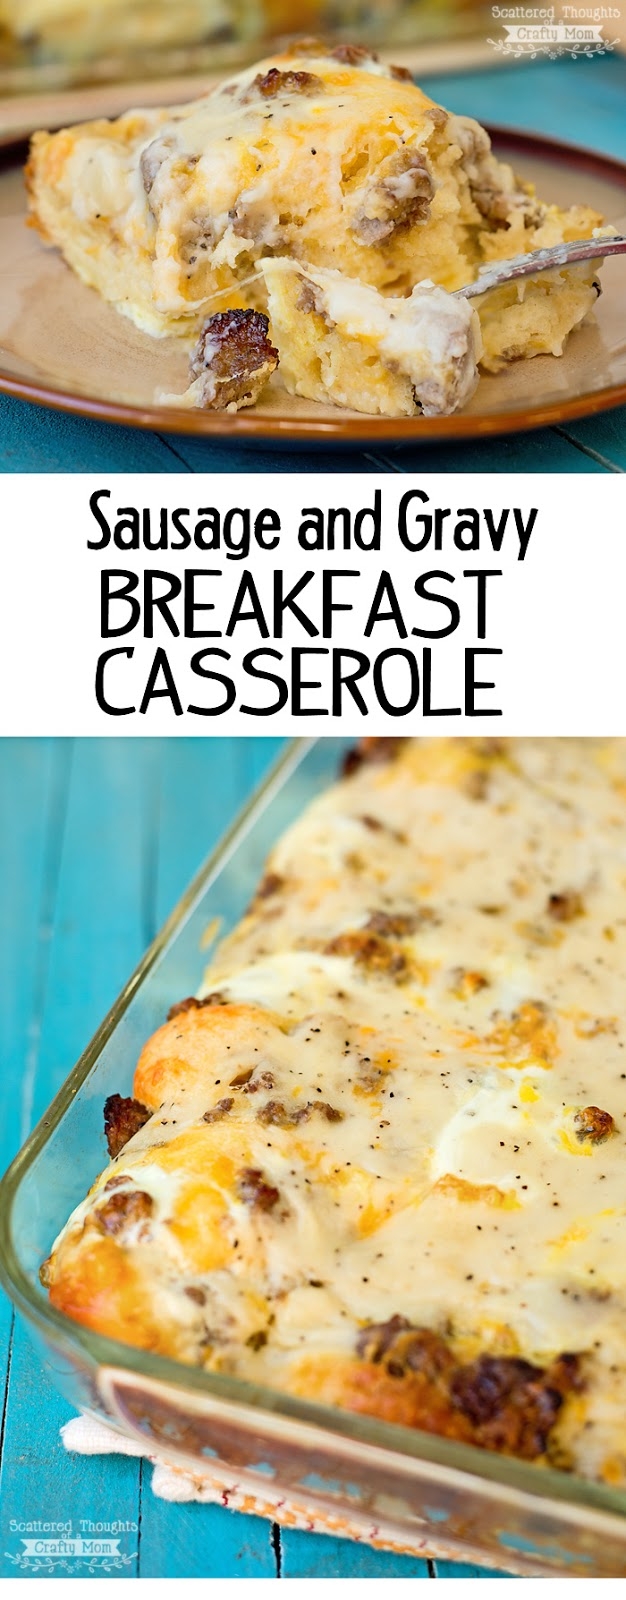 Sausage, Gravy and Biscuit Breakfast Casserole